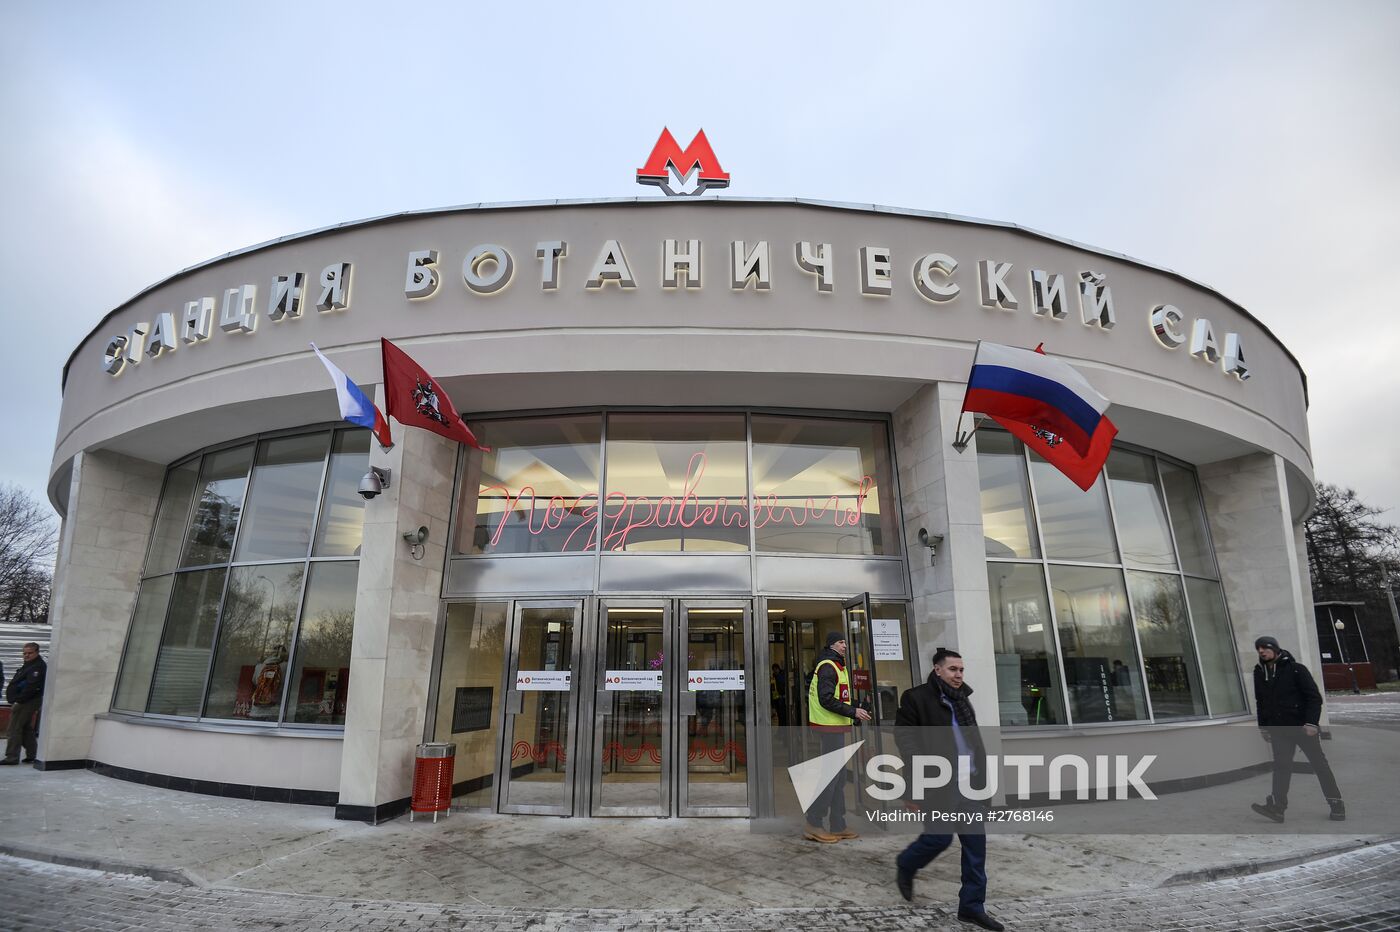 Botanichesky Sad Station's southern hallway opens after renovation